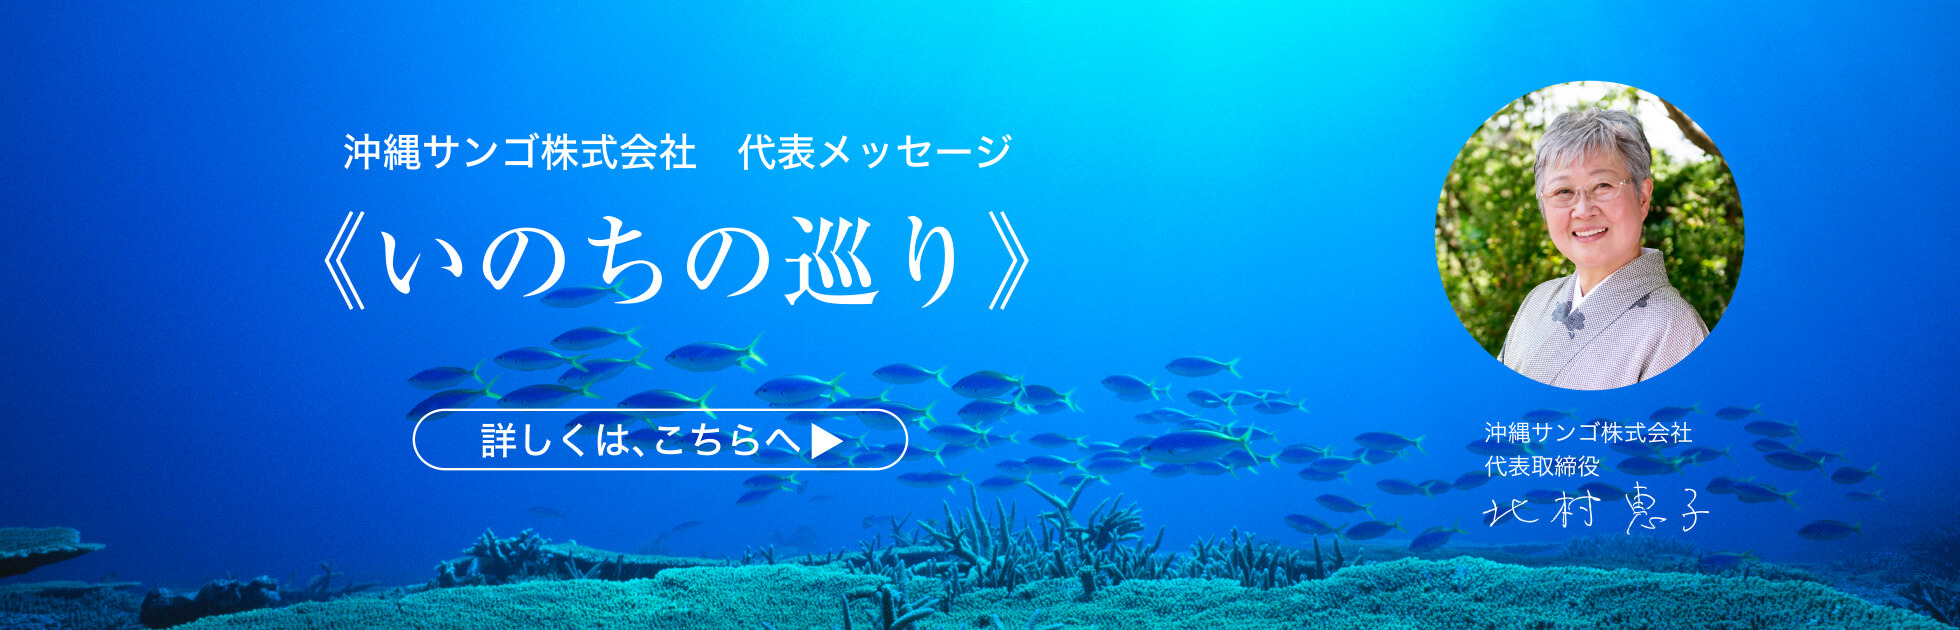 沖縄サンゴ株式会社 代表メッセージ 「いのちの巡り」